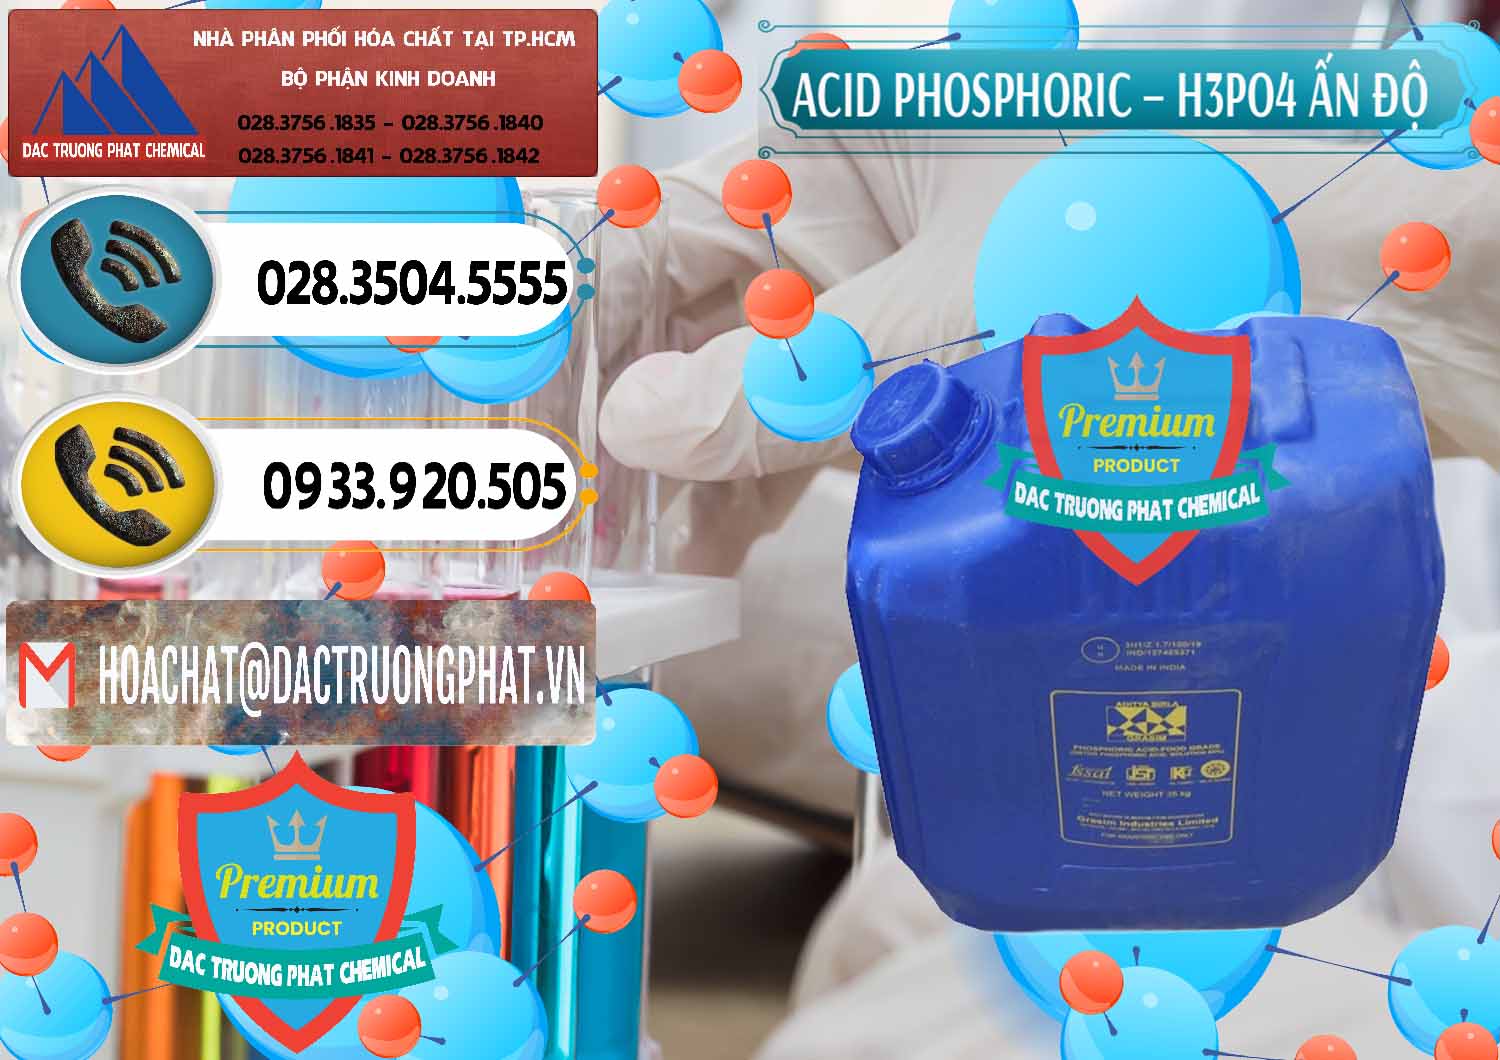 Cty chuyên cung ứng và bán Axit Phosphoric H3PO4 85% Ấn Độ - 0350 - Nhà cung cấp và phân phối hóa chất tại TP.HCM - hoachatdetnhuom.vn